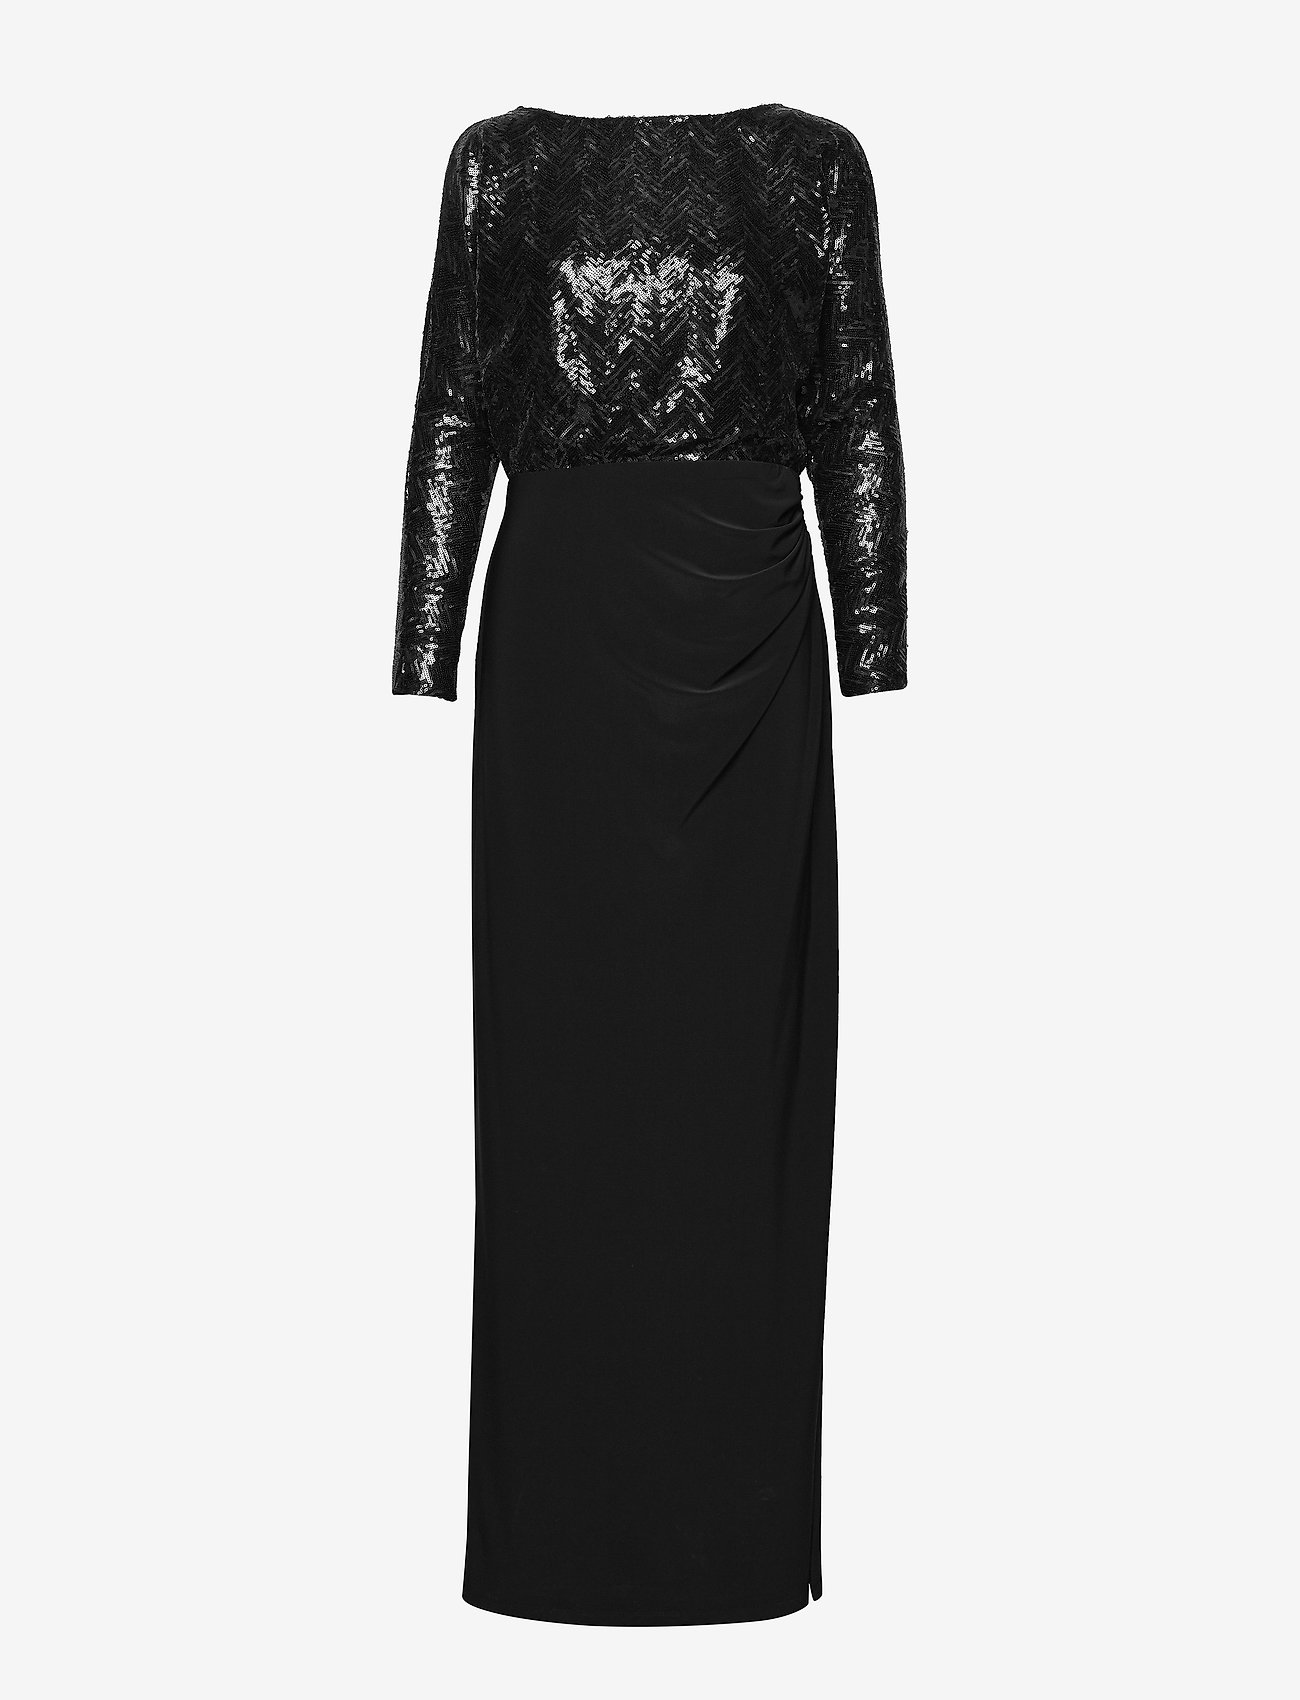 ralph lauren black long dress